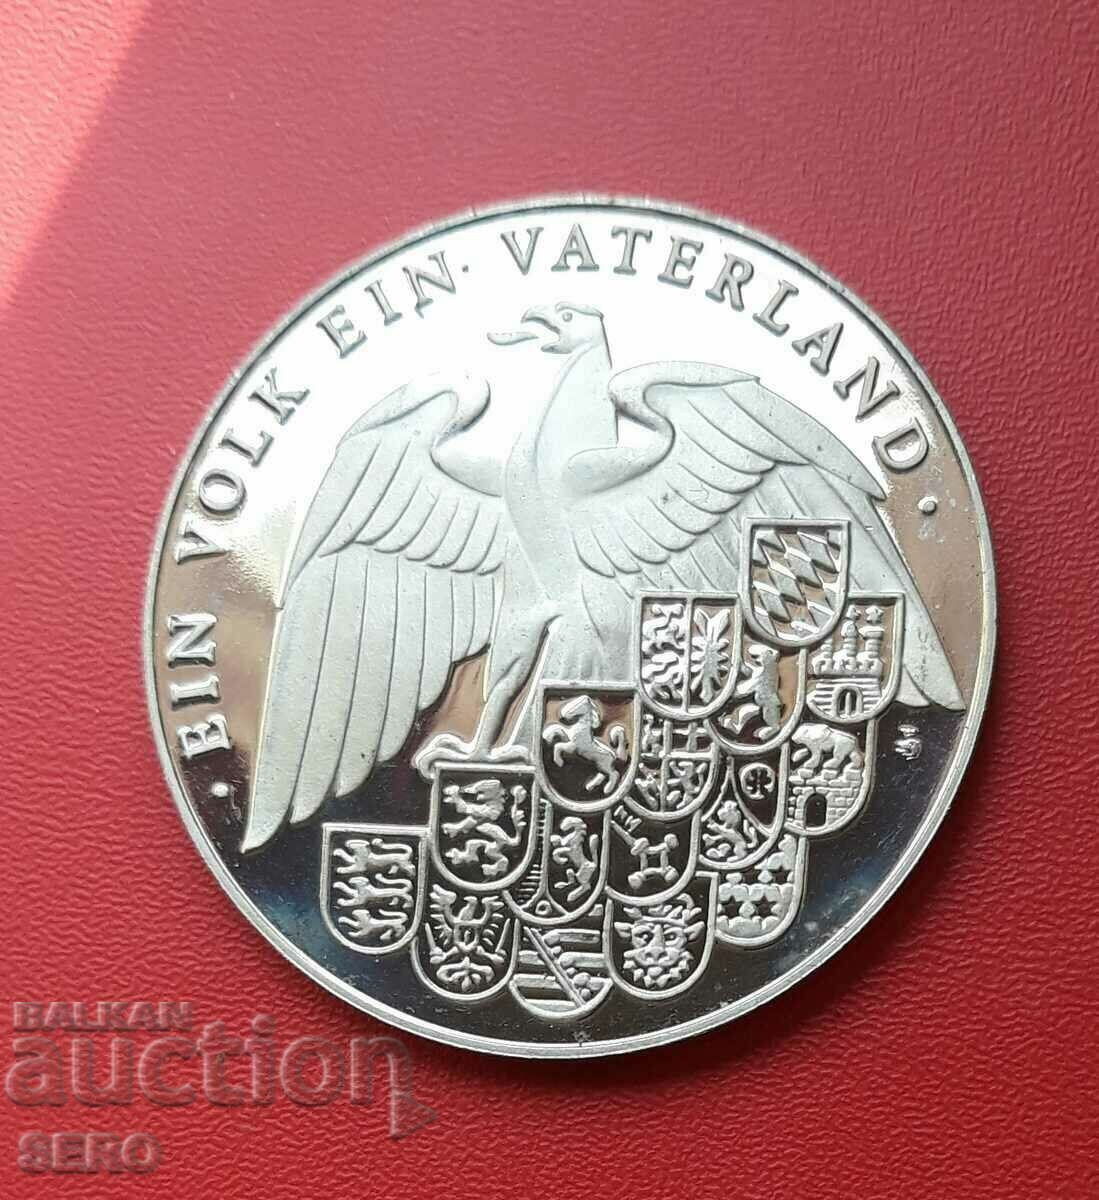 Germania-medalia-200 de ani Poarta Brandenburg